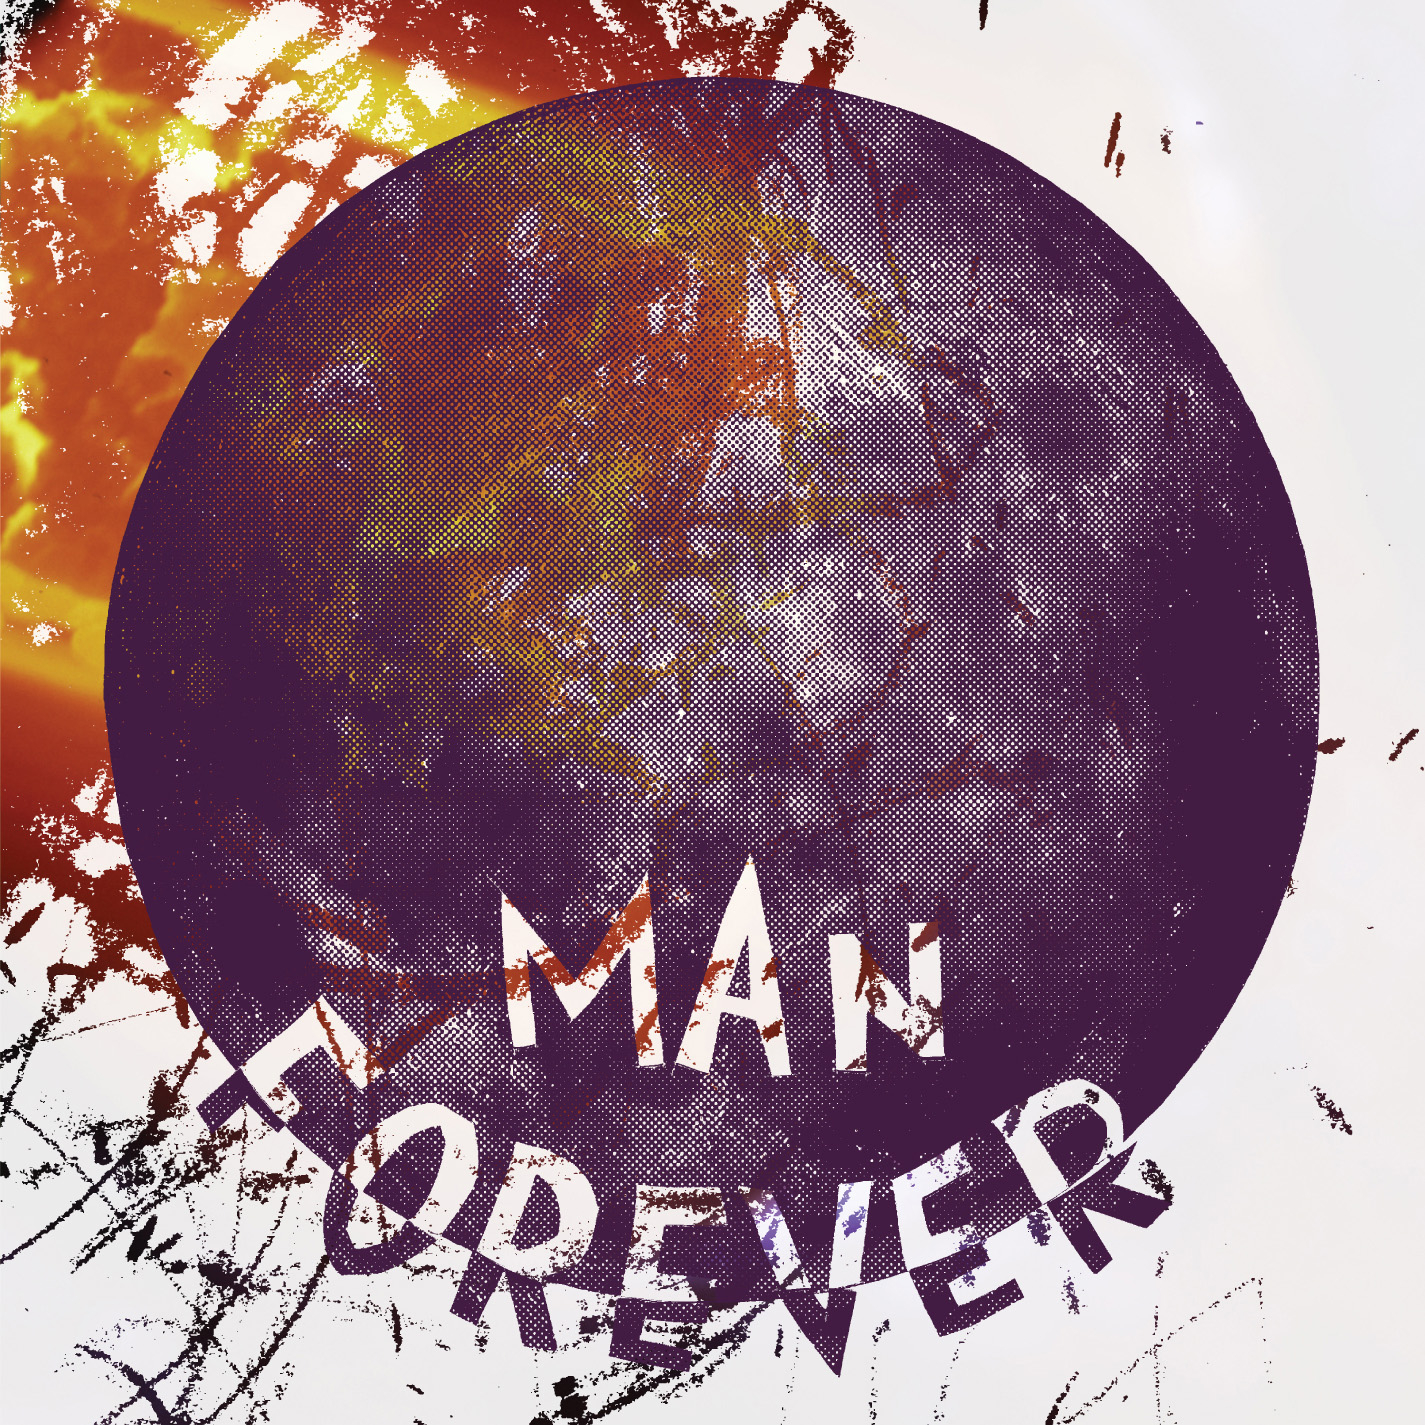 Man Forever